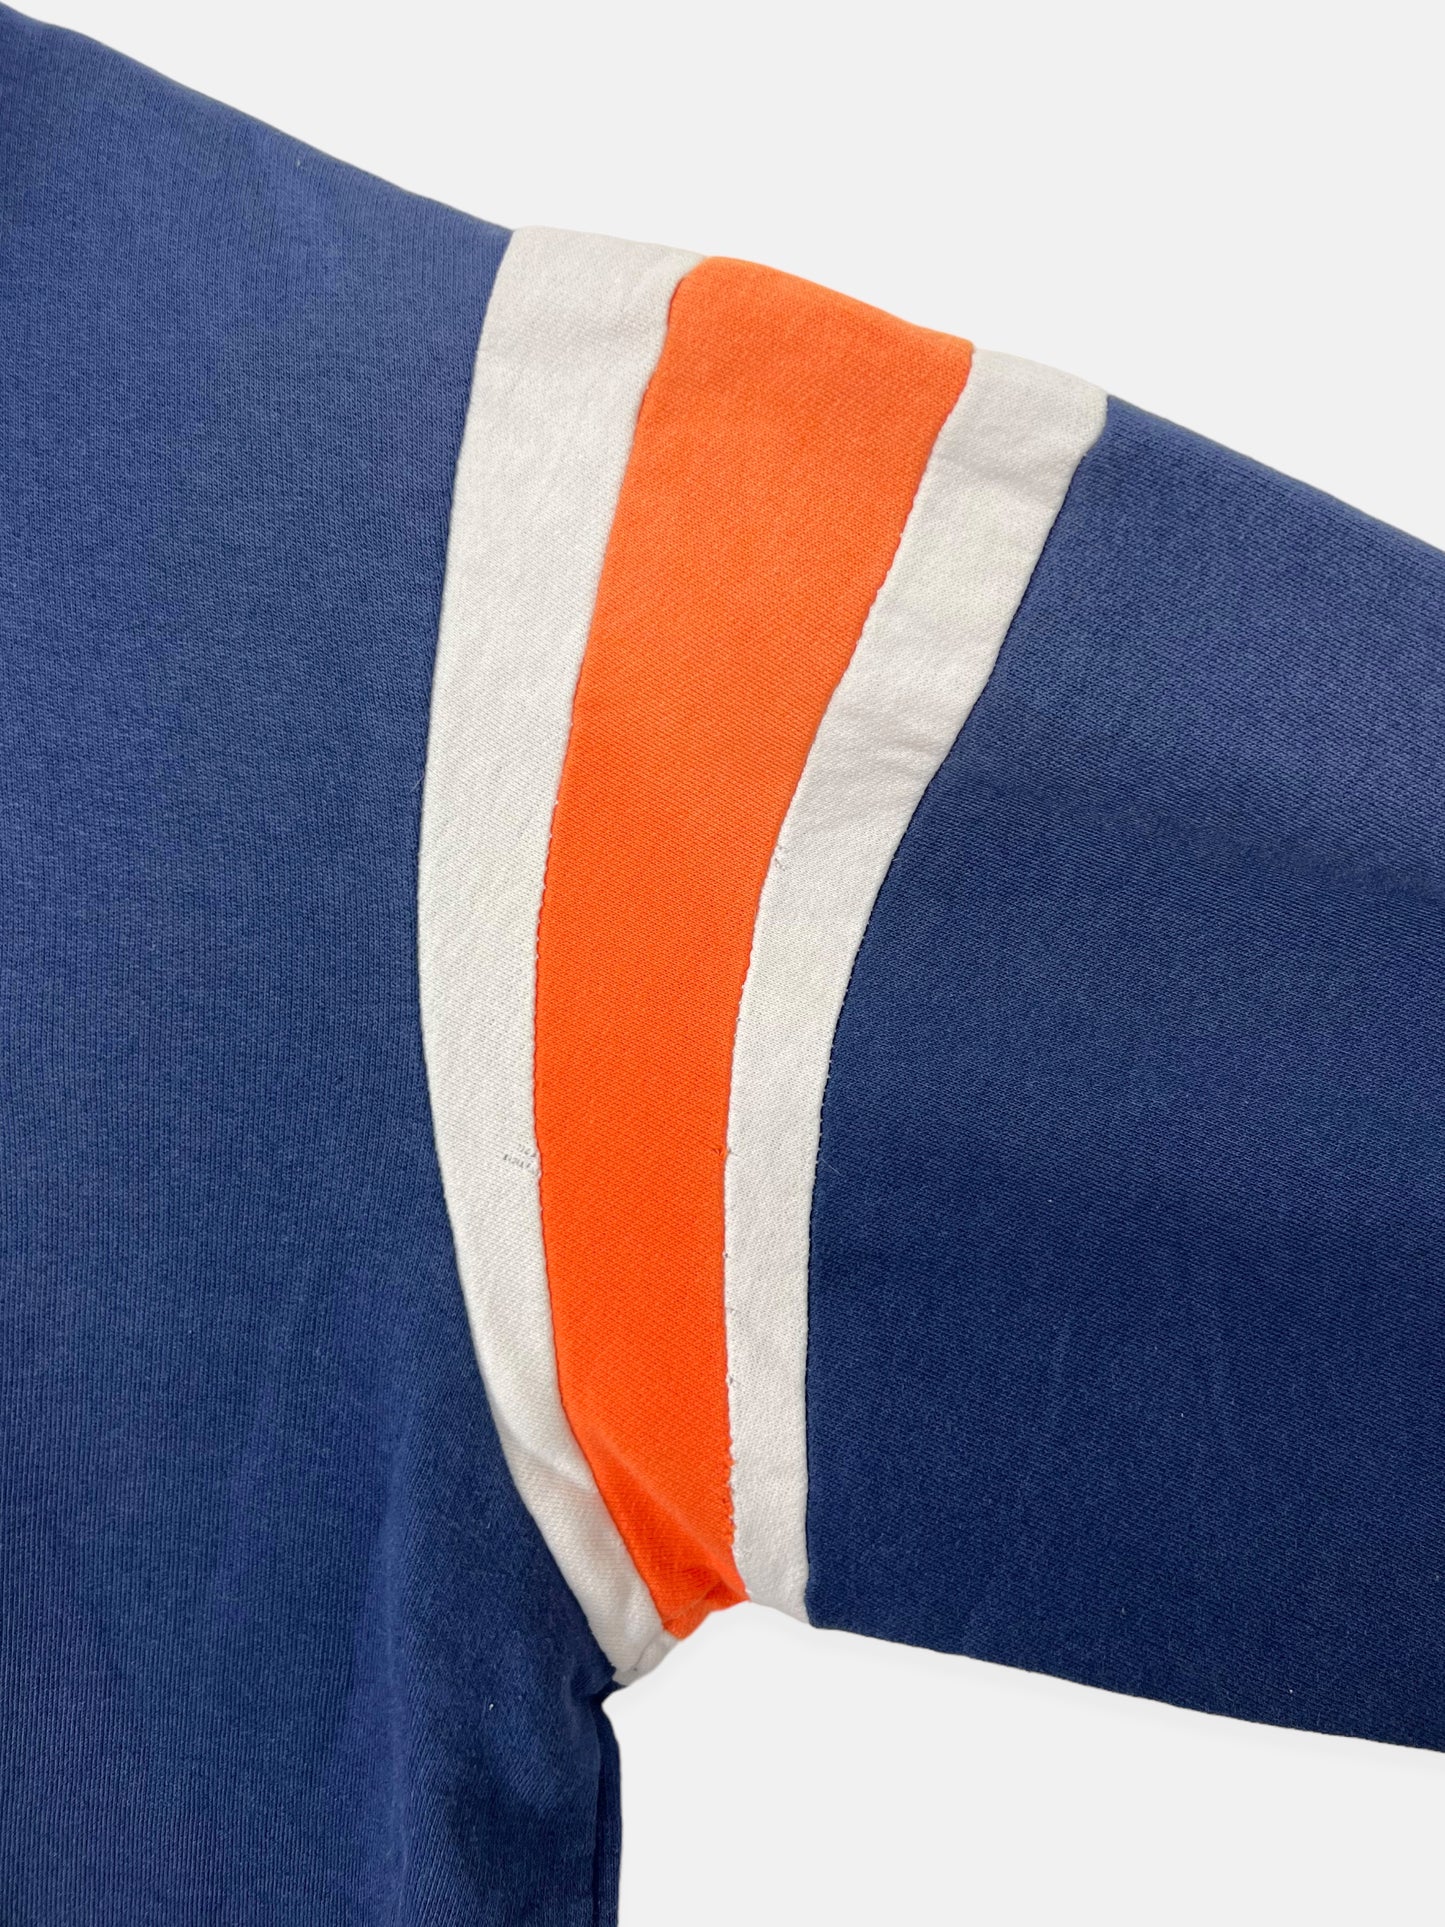 Denver Broncos NFL Embroidered Vintage Zip-Up Hoodie Size M-L